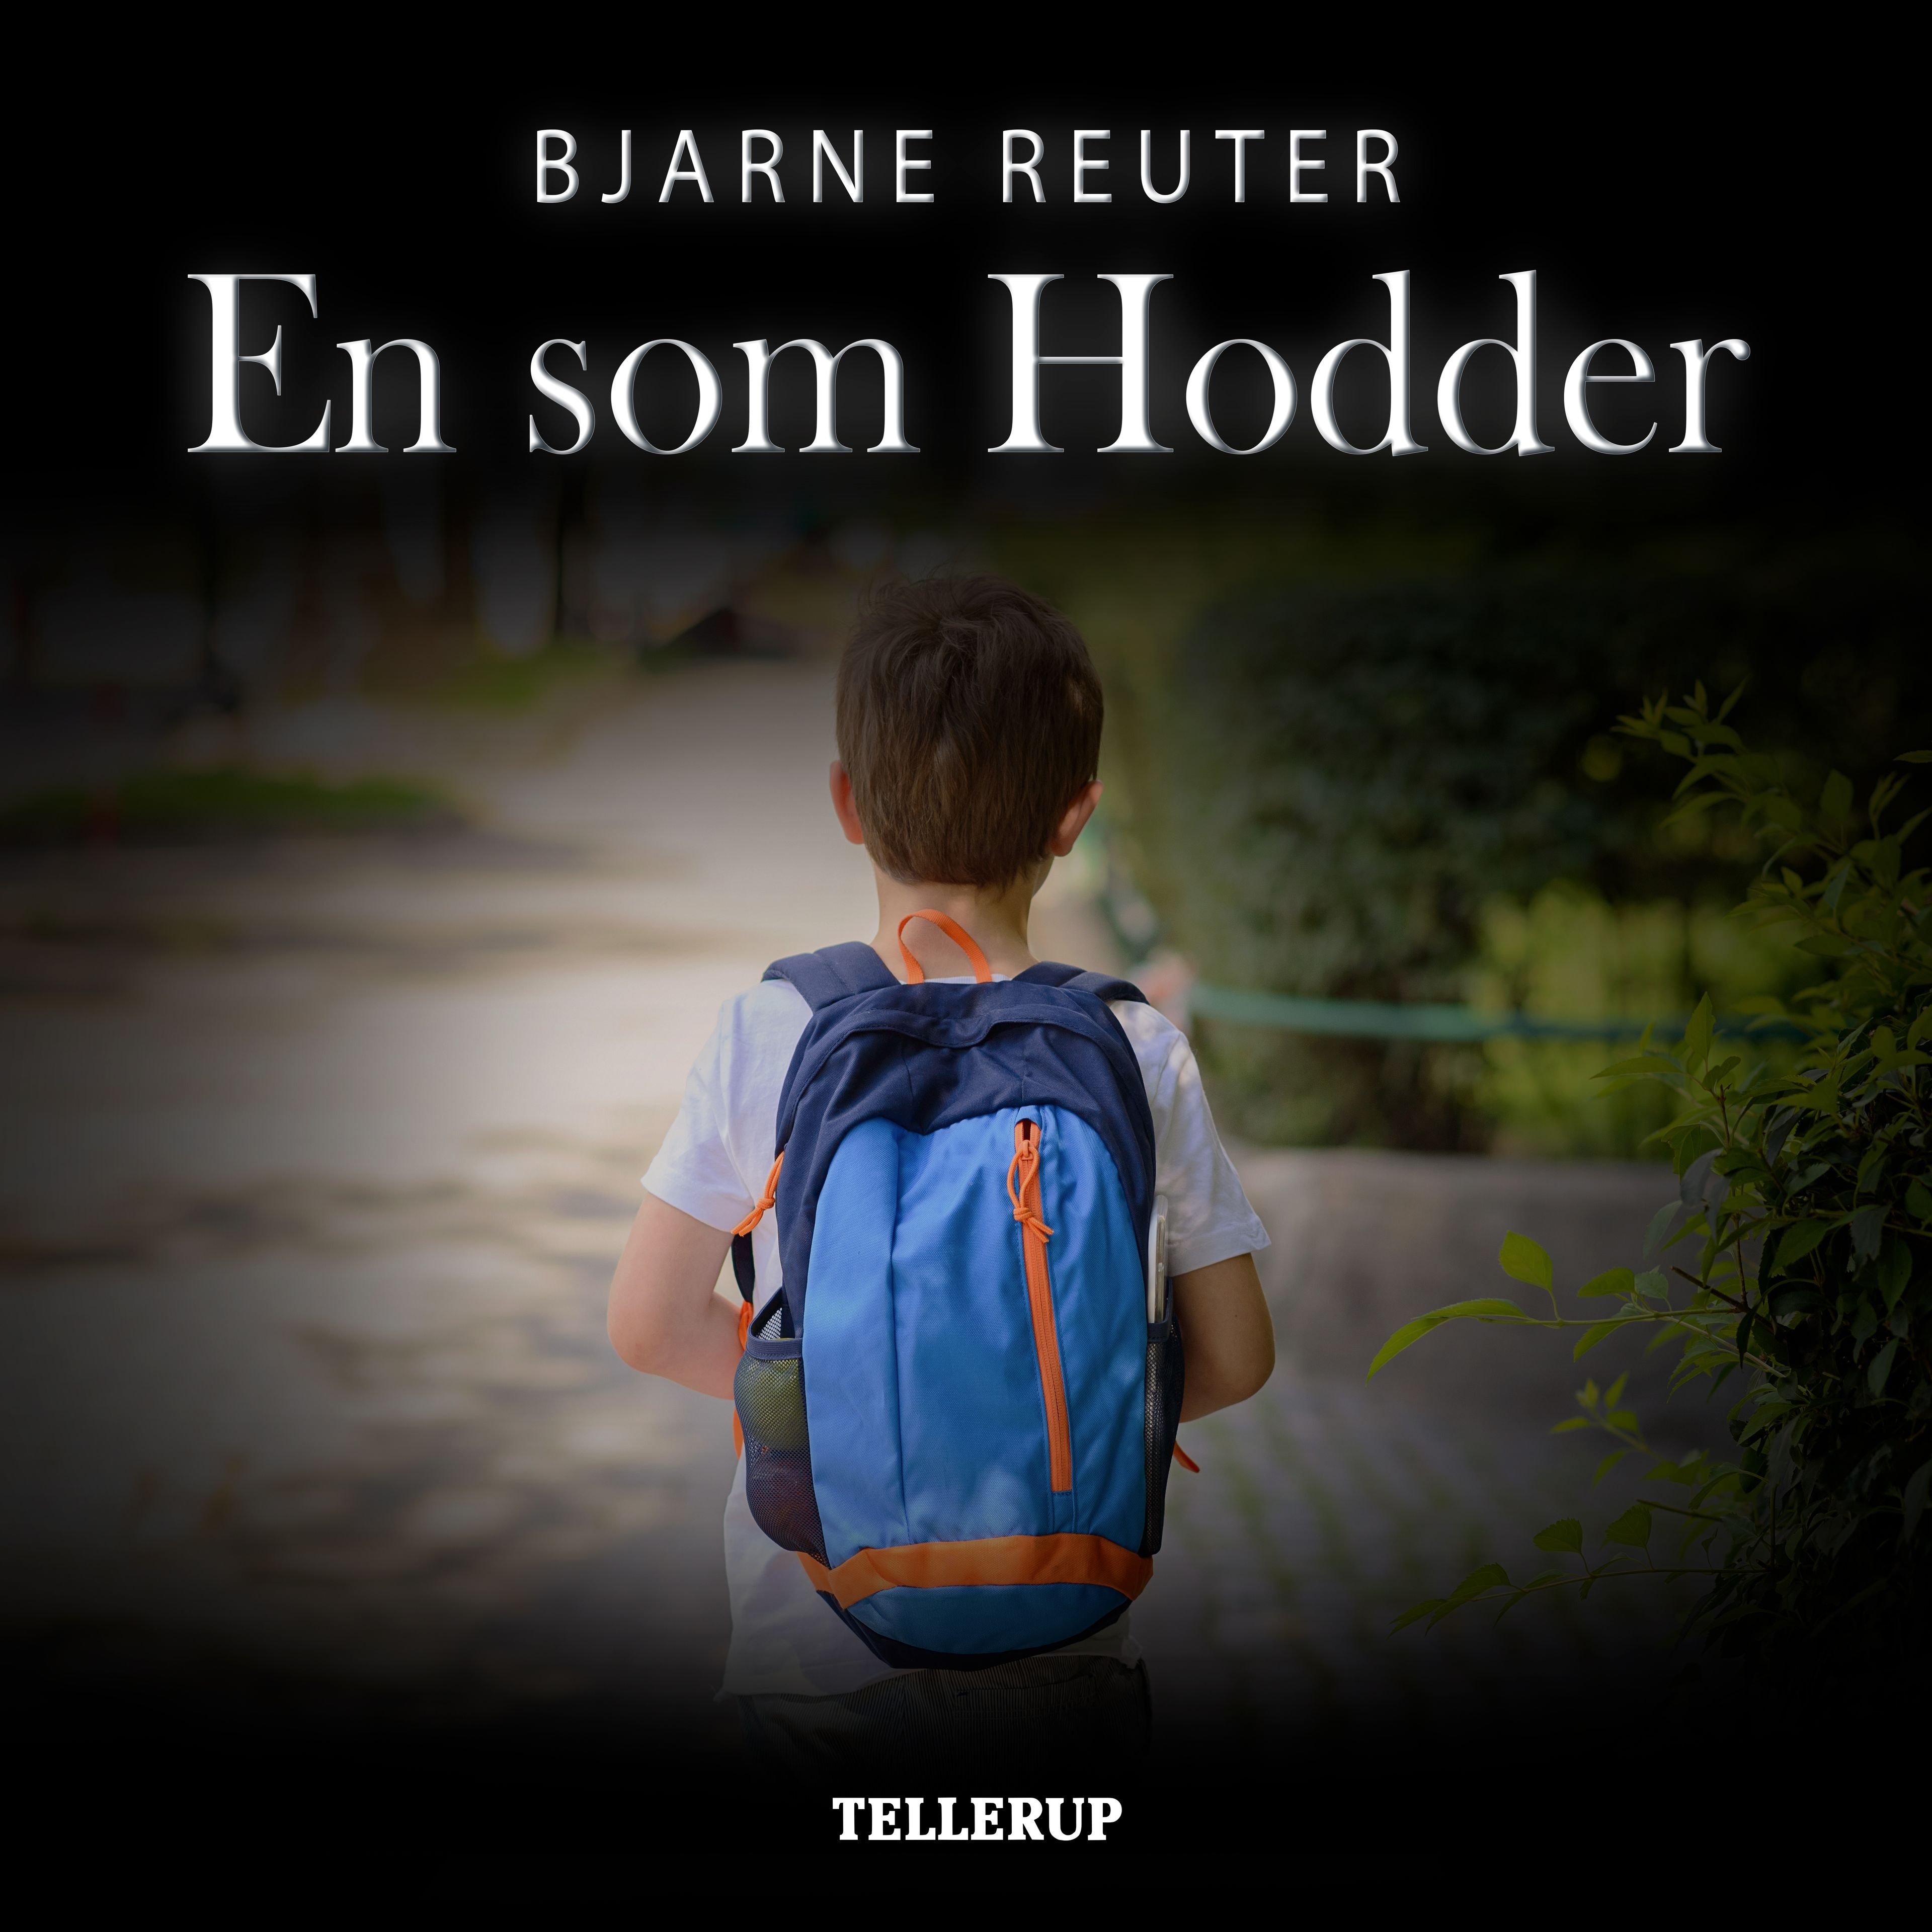 En som Hodder, ljudbok av Bjarne Reuter